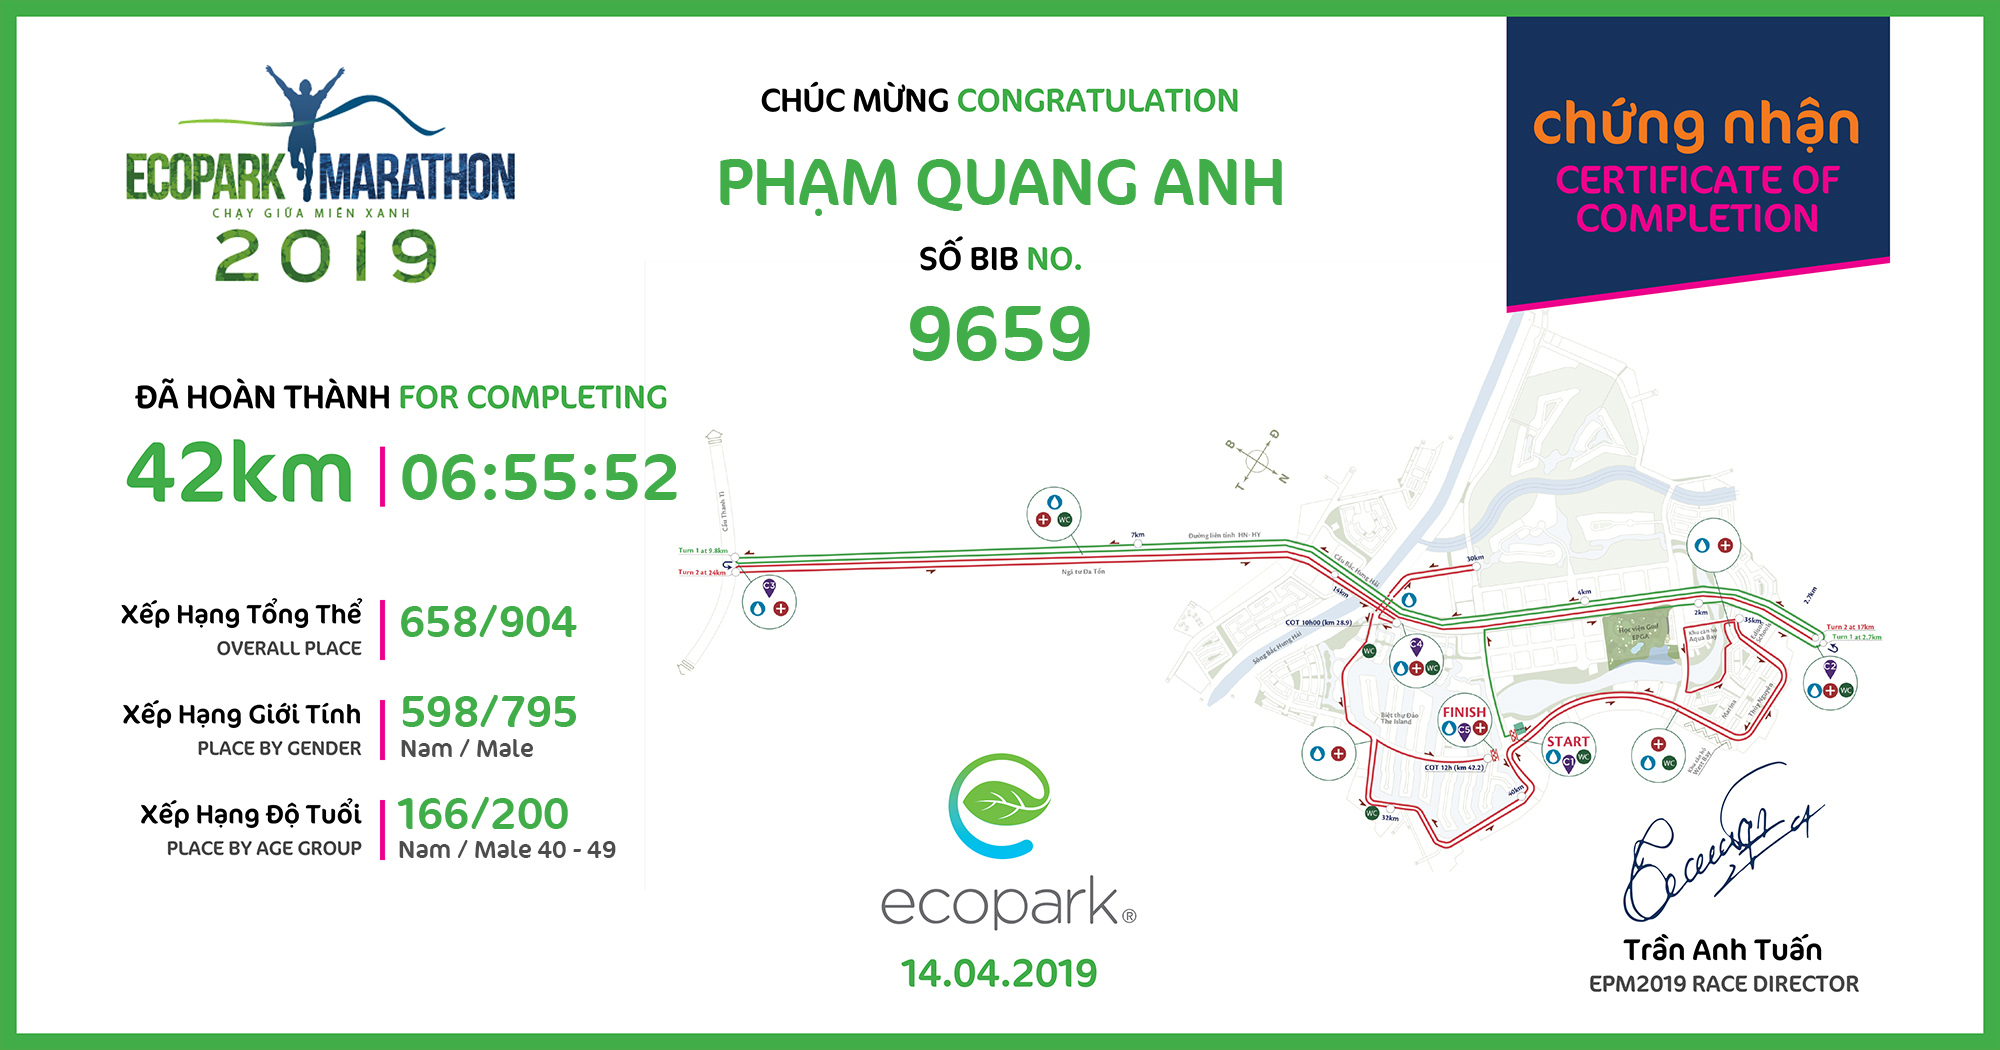 9659 - Phạm Quang Anh